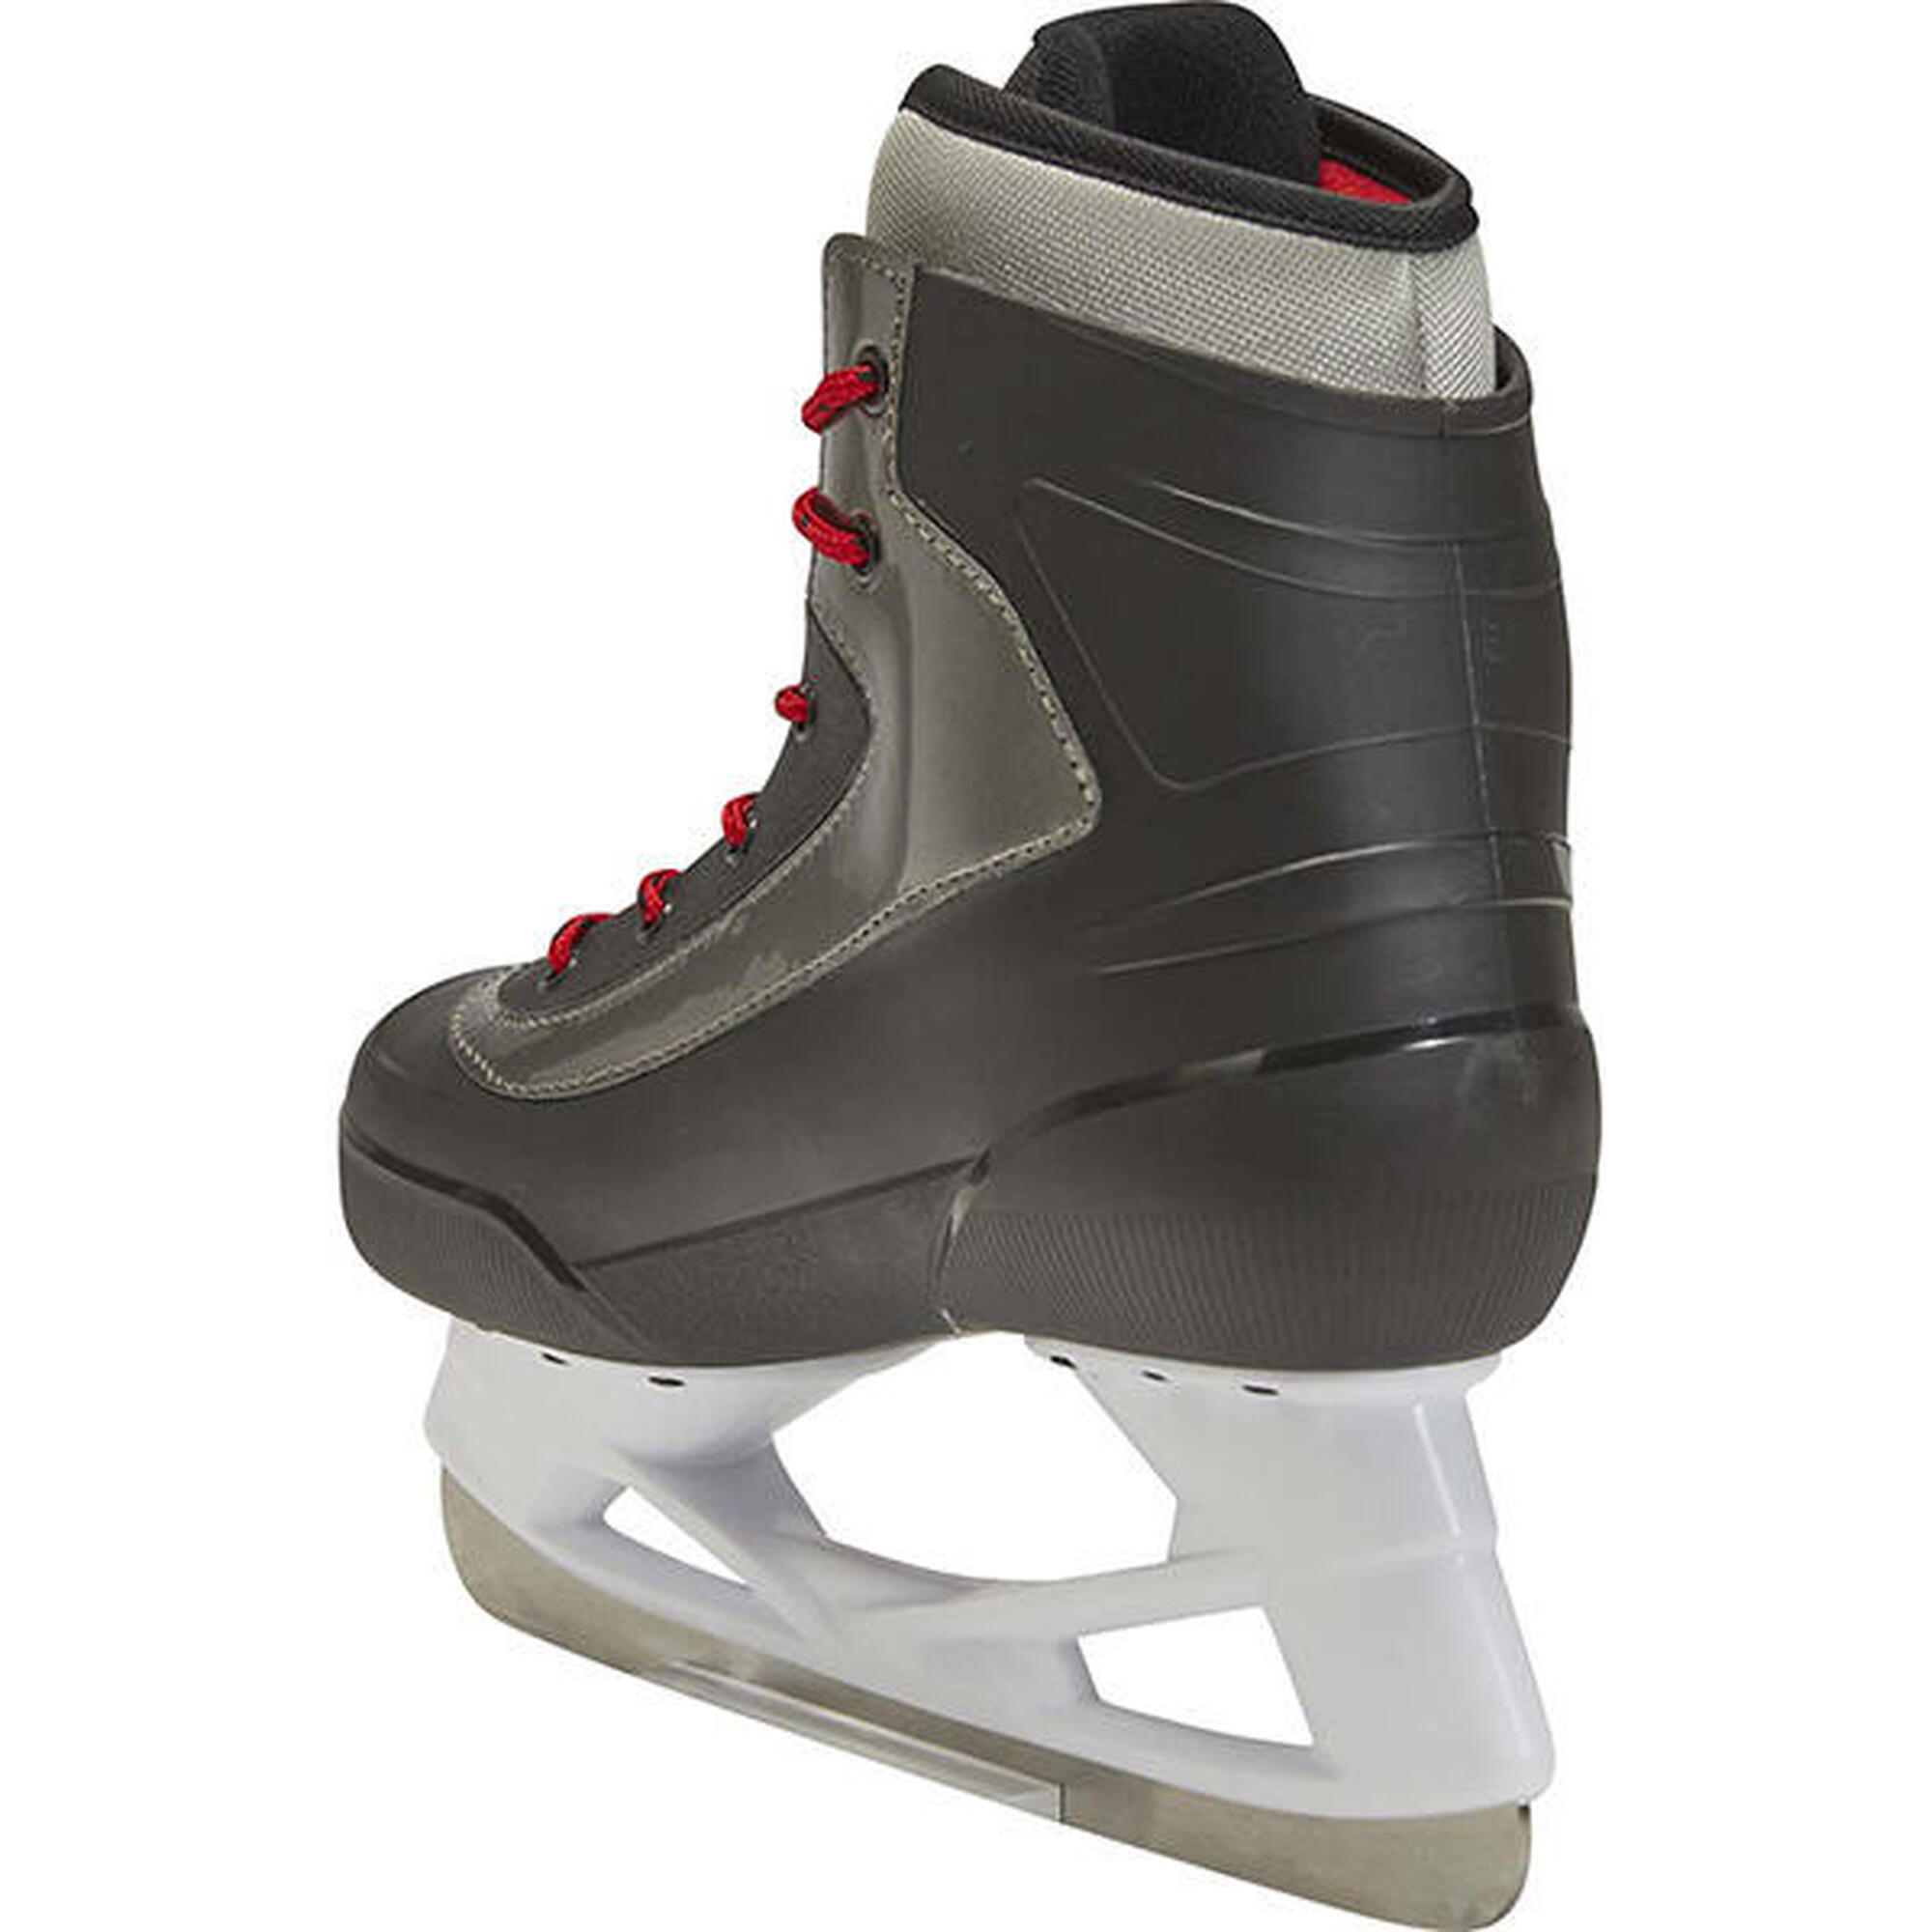 Bauer S21 Expedition Rec patin de hockey sur glace - Unisex